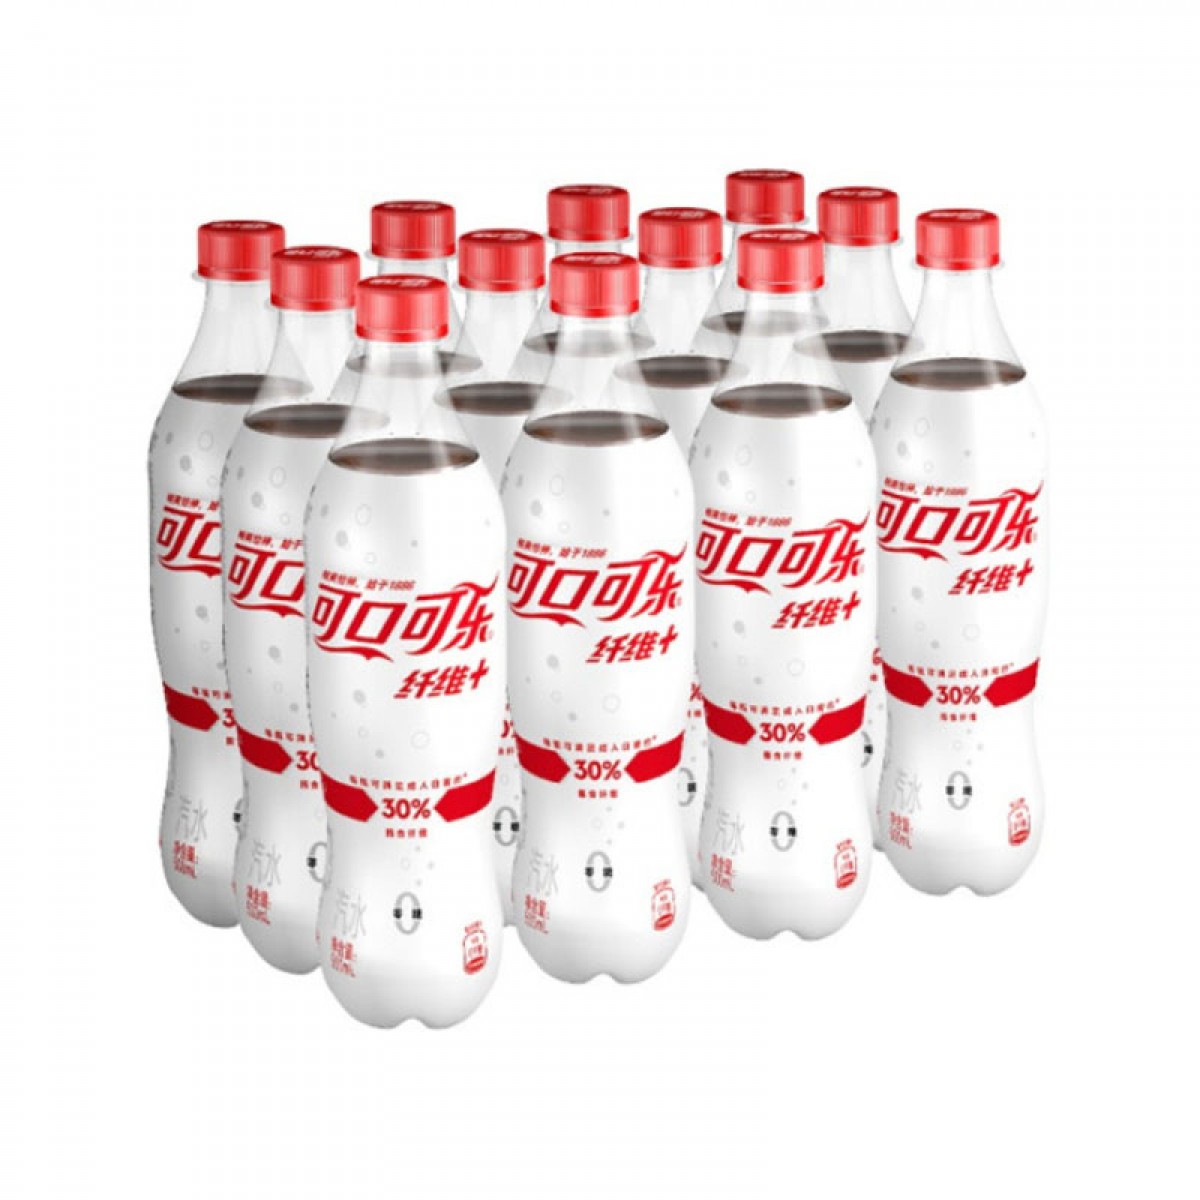 可口可乐 纤维+ 无糖零热量 膳食纤维 汽水 碳酸饮料 可口可乐公司出品 当季新品网红版 500mlX12瓶 整箱装